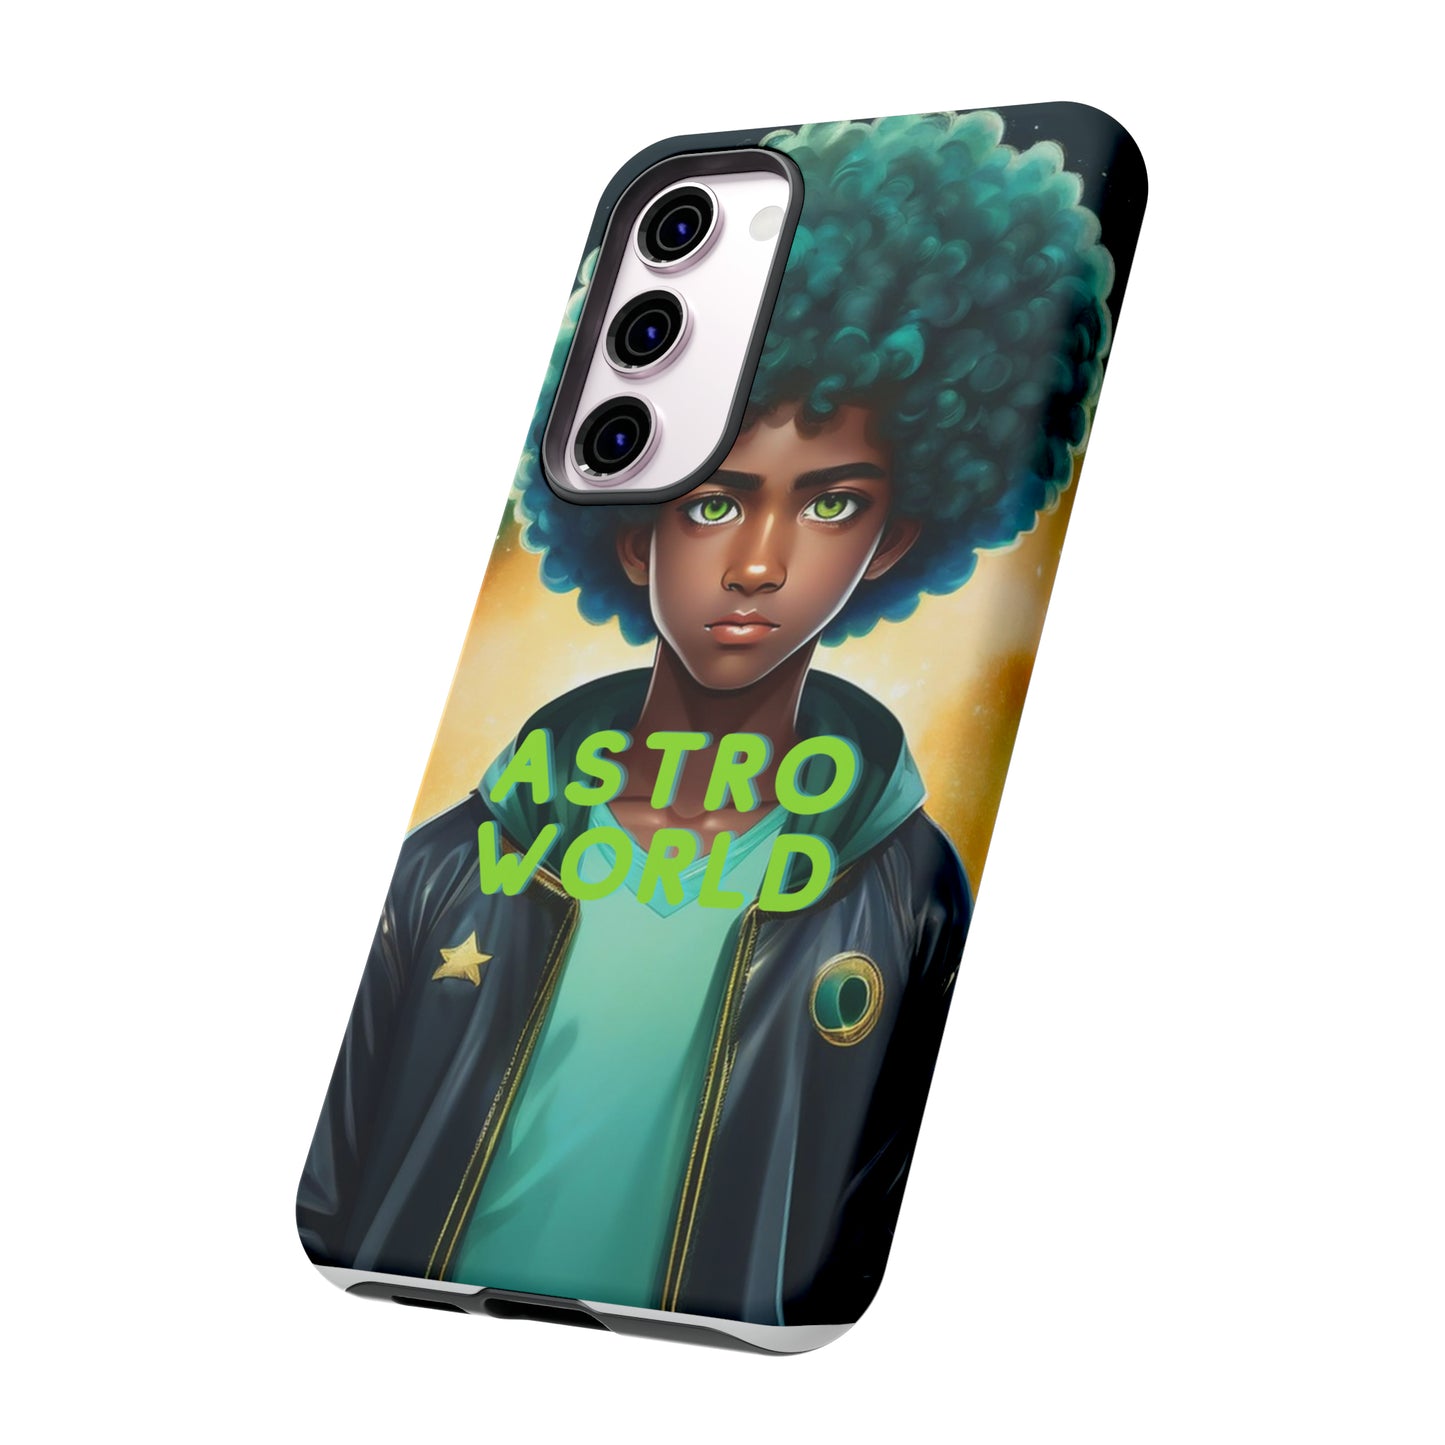 "Astro World" Tough Case